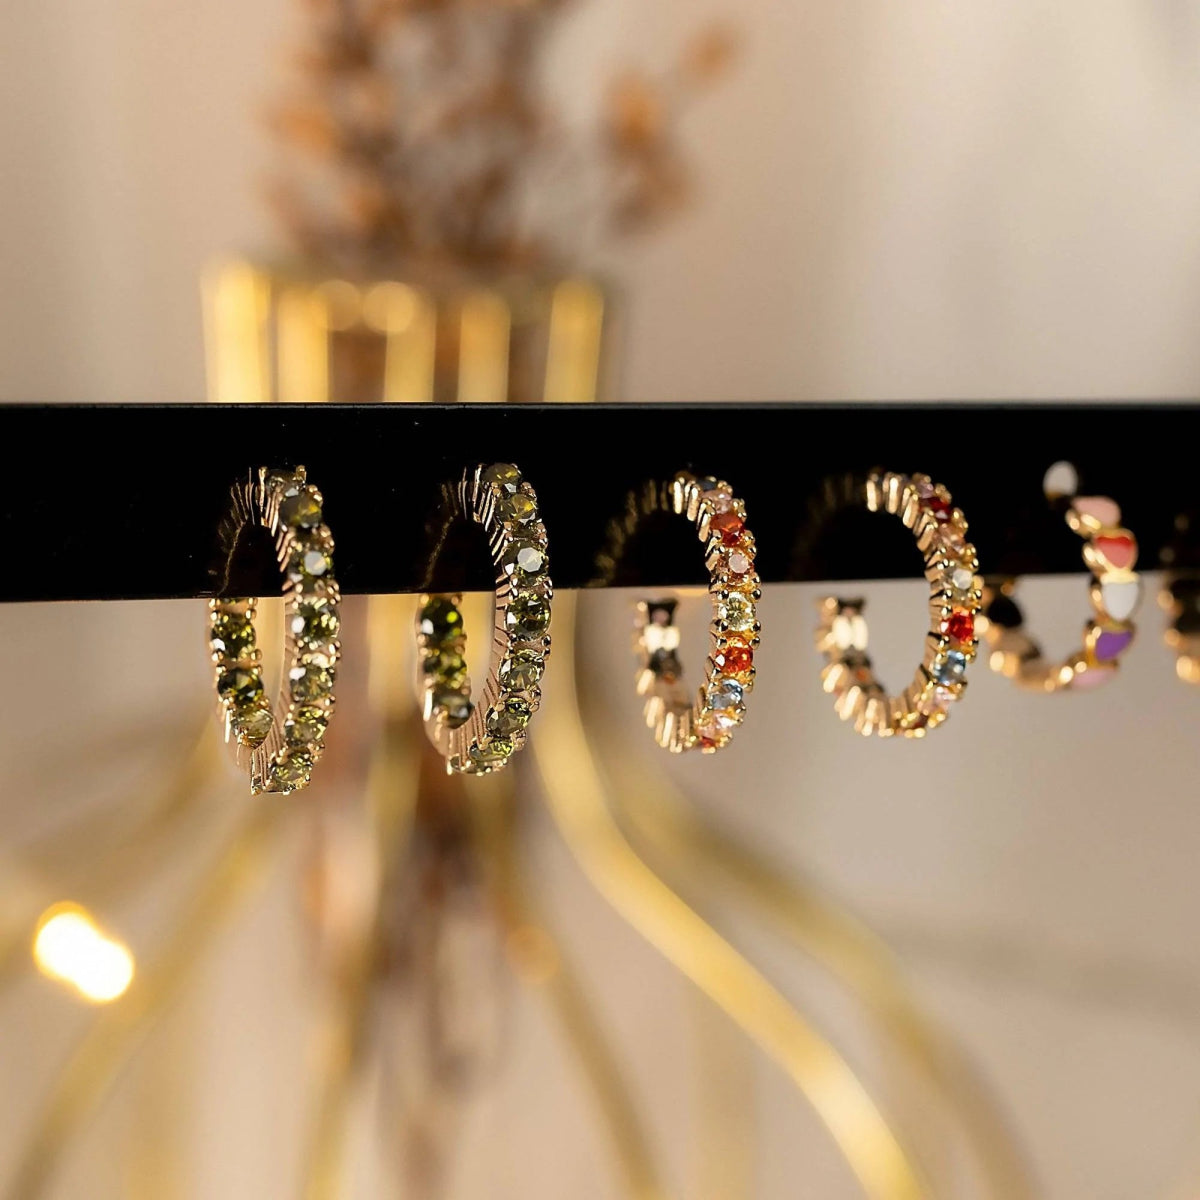 "Half Ring Tropical" Earrings - Milas Jewels Shop